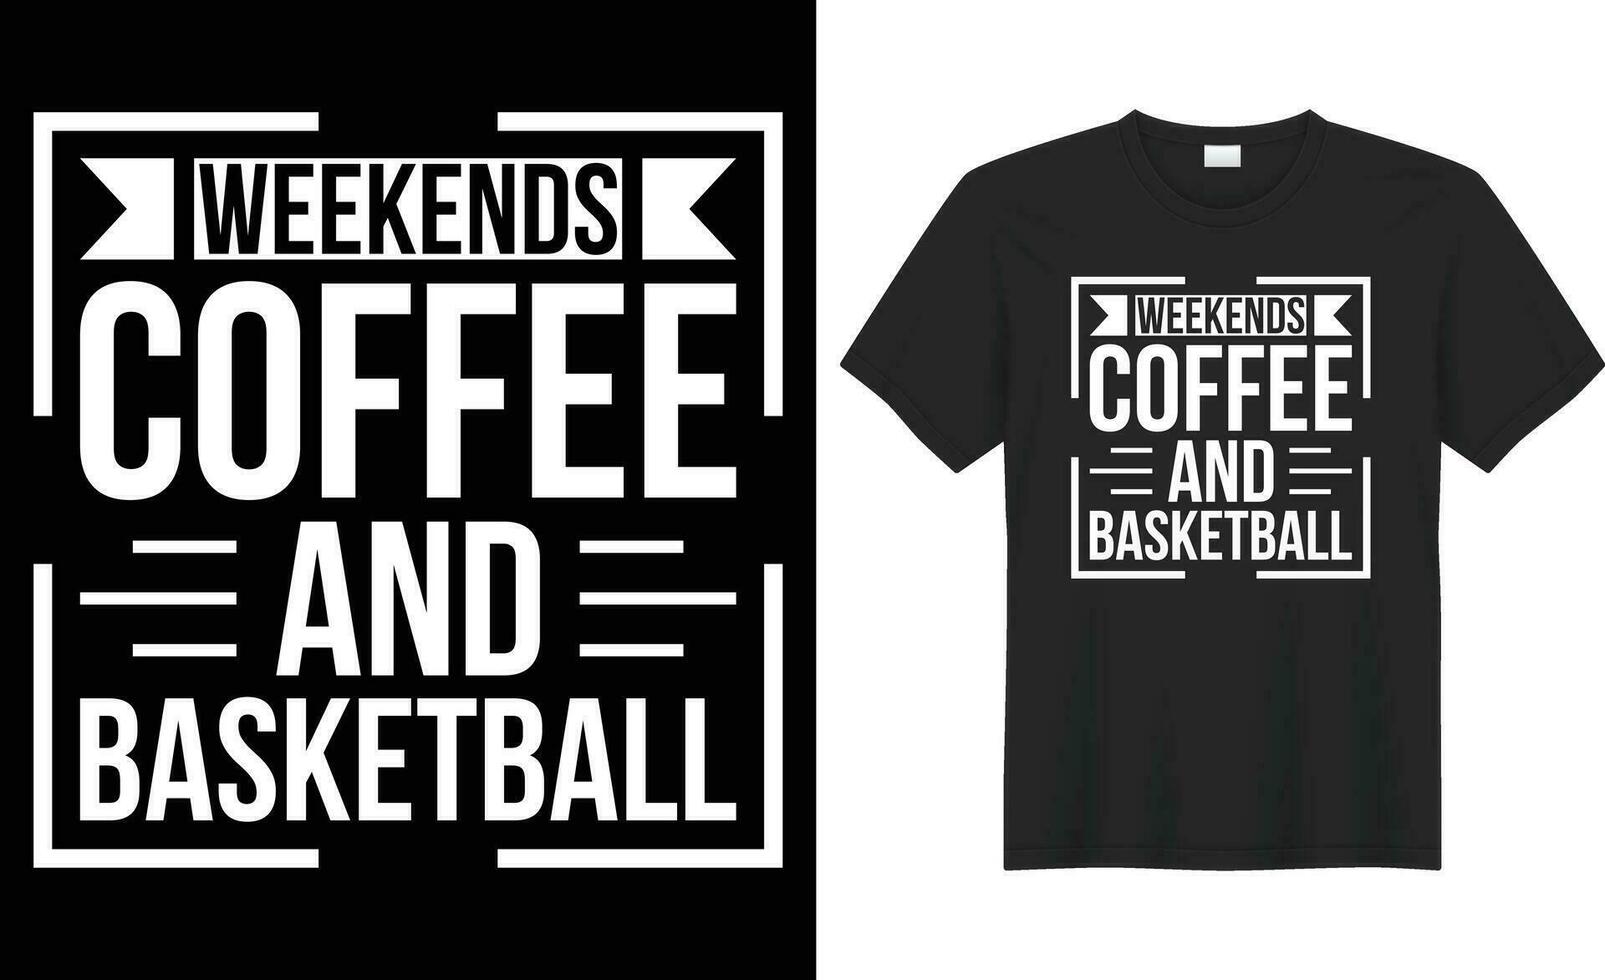 Wochenenden Kaffee und Basketball Typografie Vektor T-Shirt Design. perfekt zum drucken Artikel und Tasche, Poster, Aufkleber, Vorlage. handgeschrieben Vektor Illustration. isoliert auf schwarz Hintergrund.